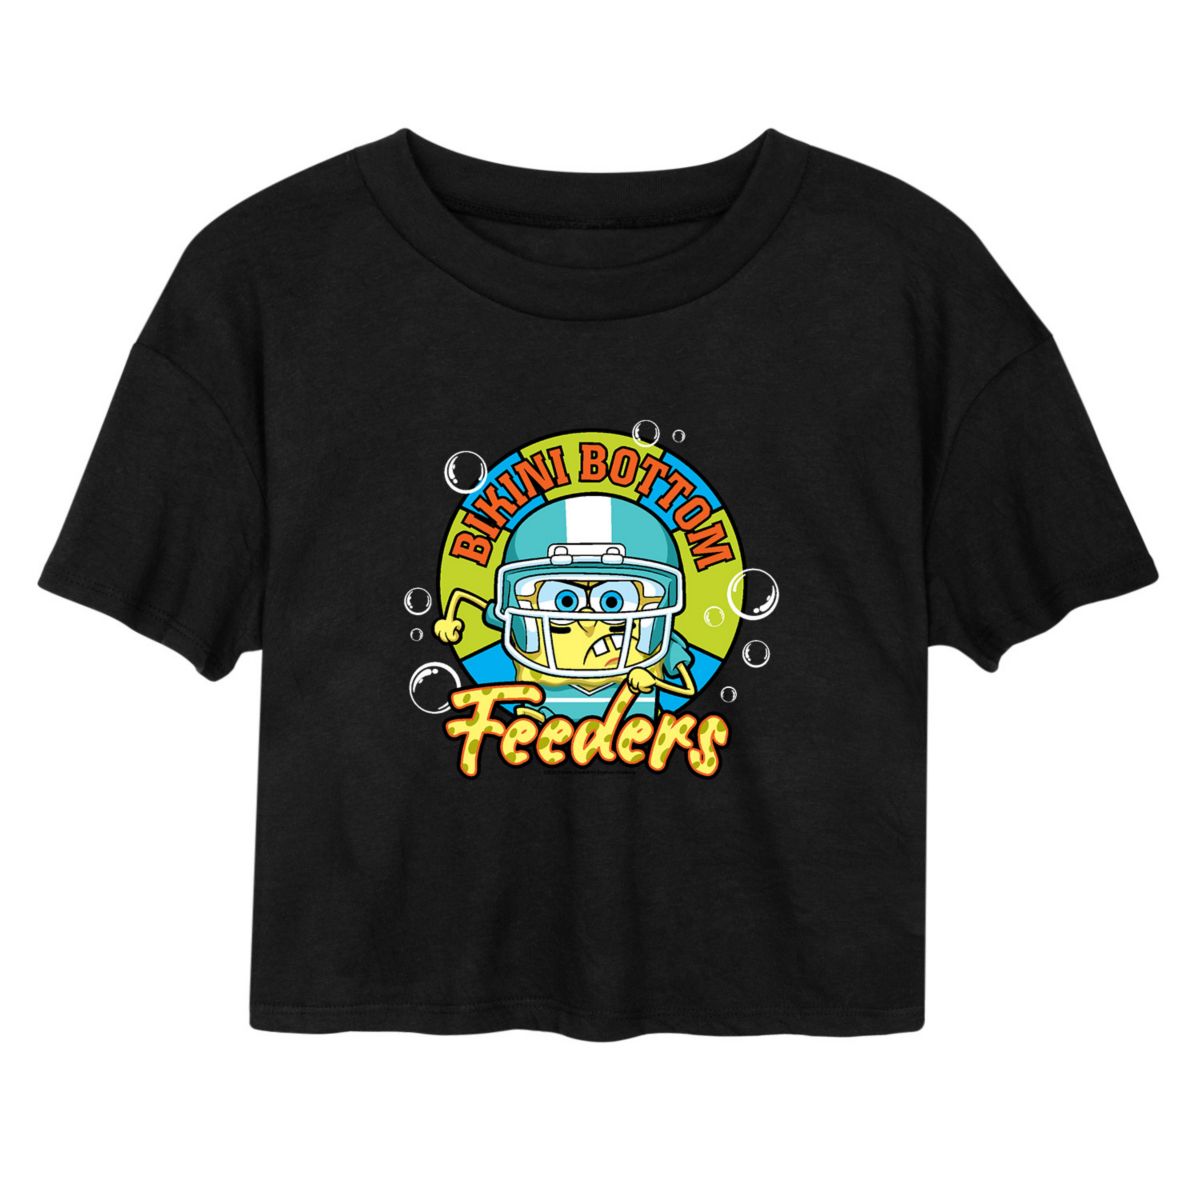 Укороченная футболка с футбольным рисунком «Губка Боб Квадратные Штаны» для юниоров Nickelodeon